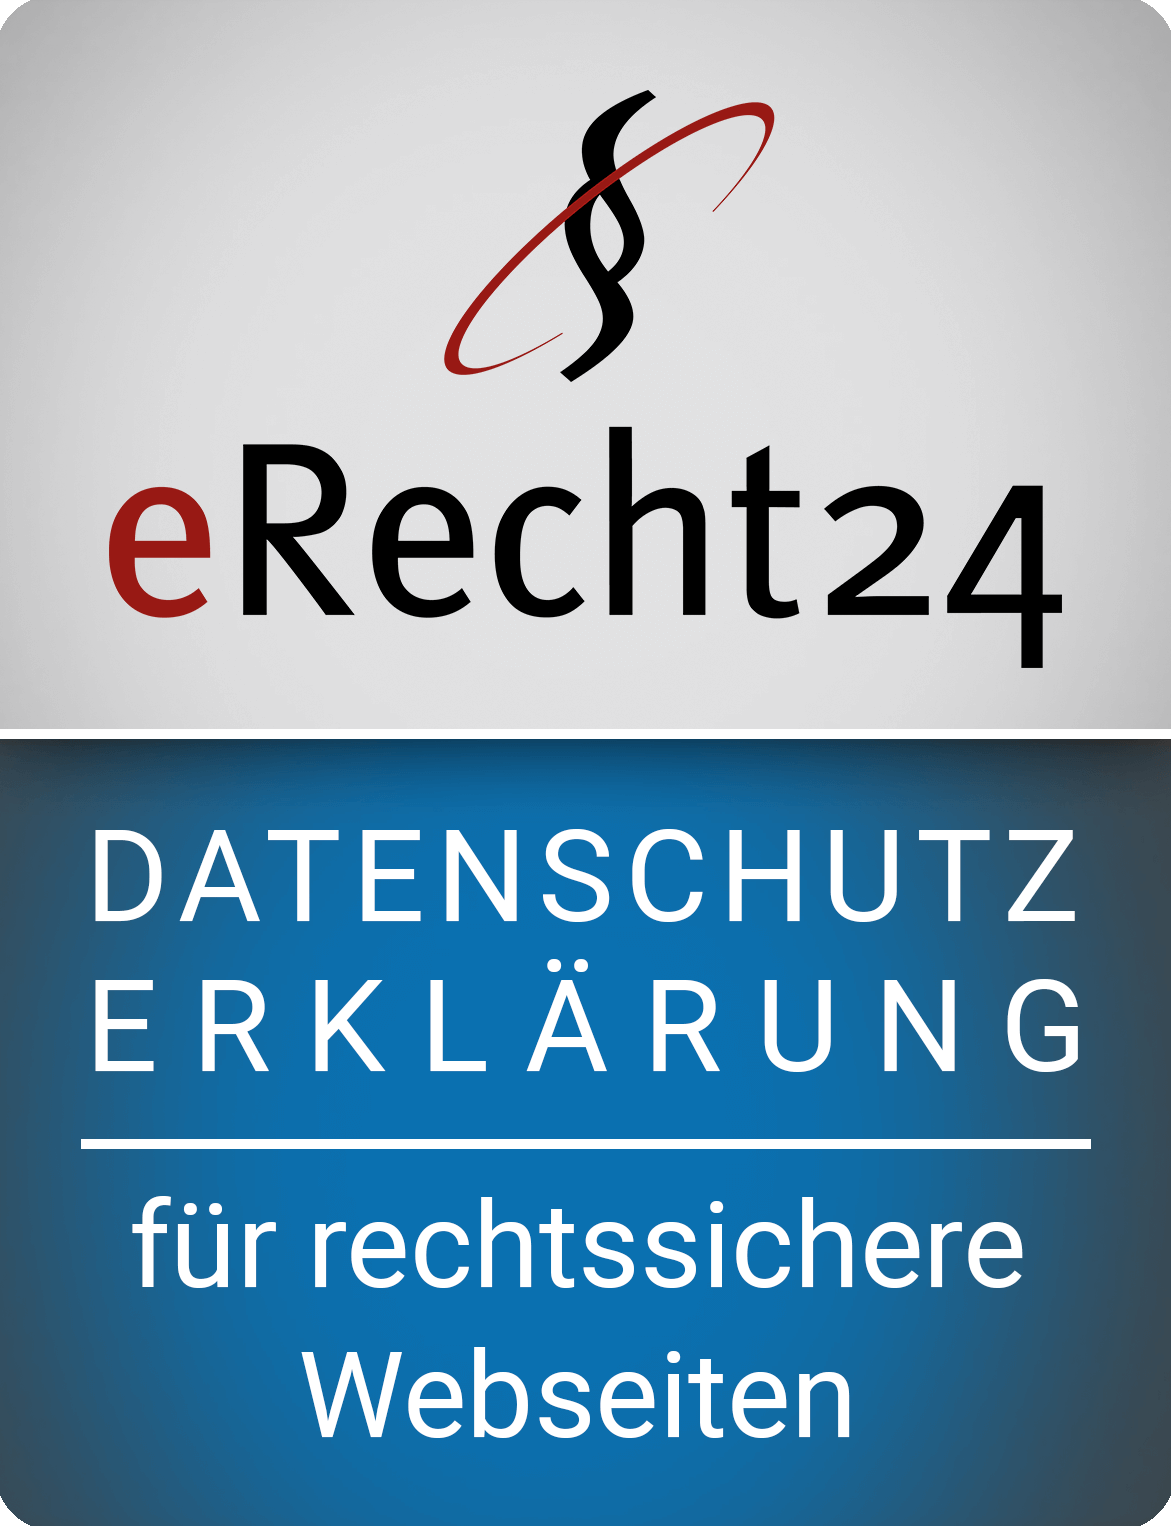 www.e-recht24.de